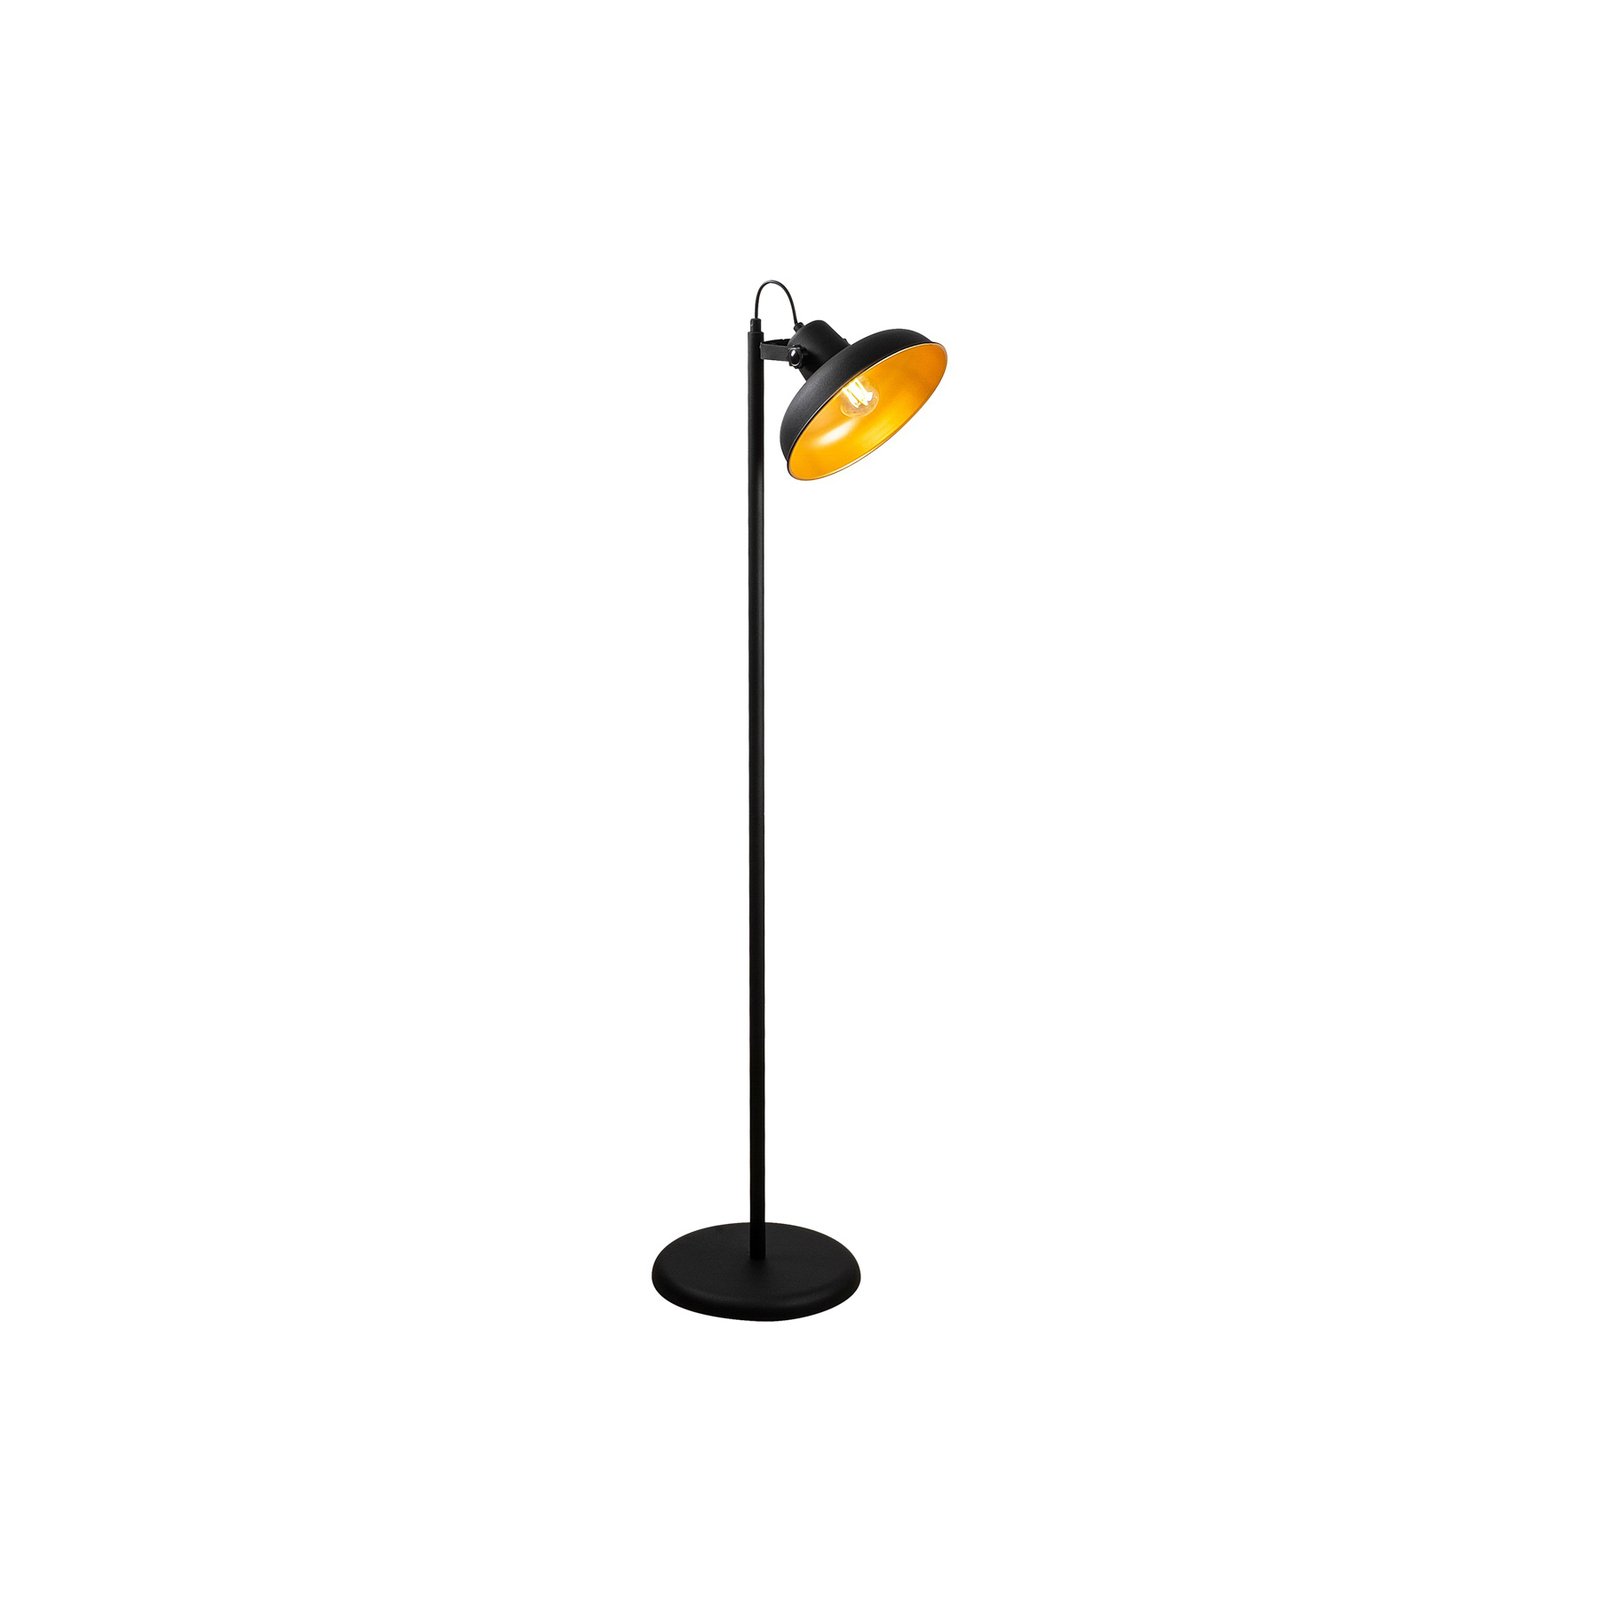 Lampe sur pied Lik 4036, inclinable, noire/dorée